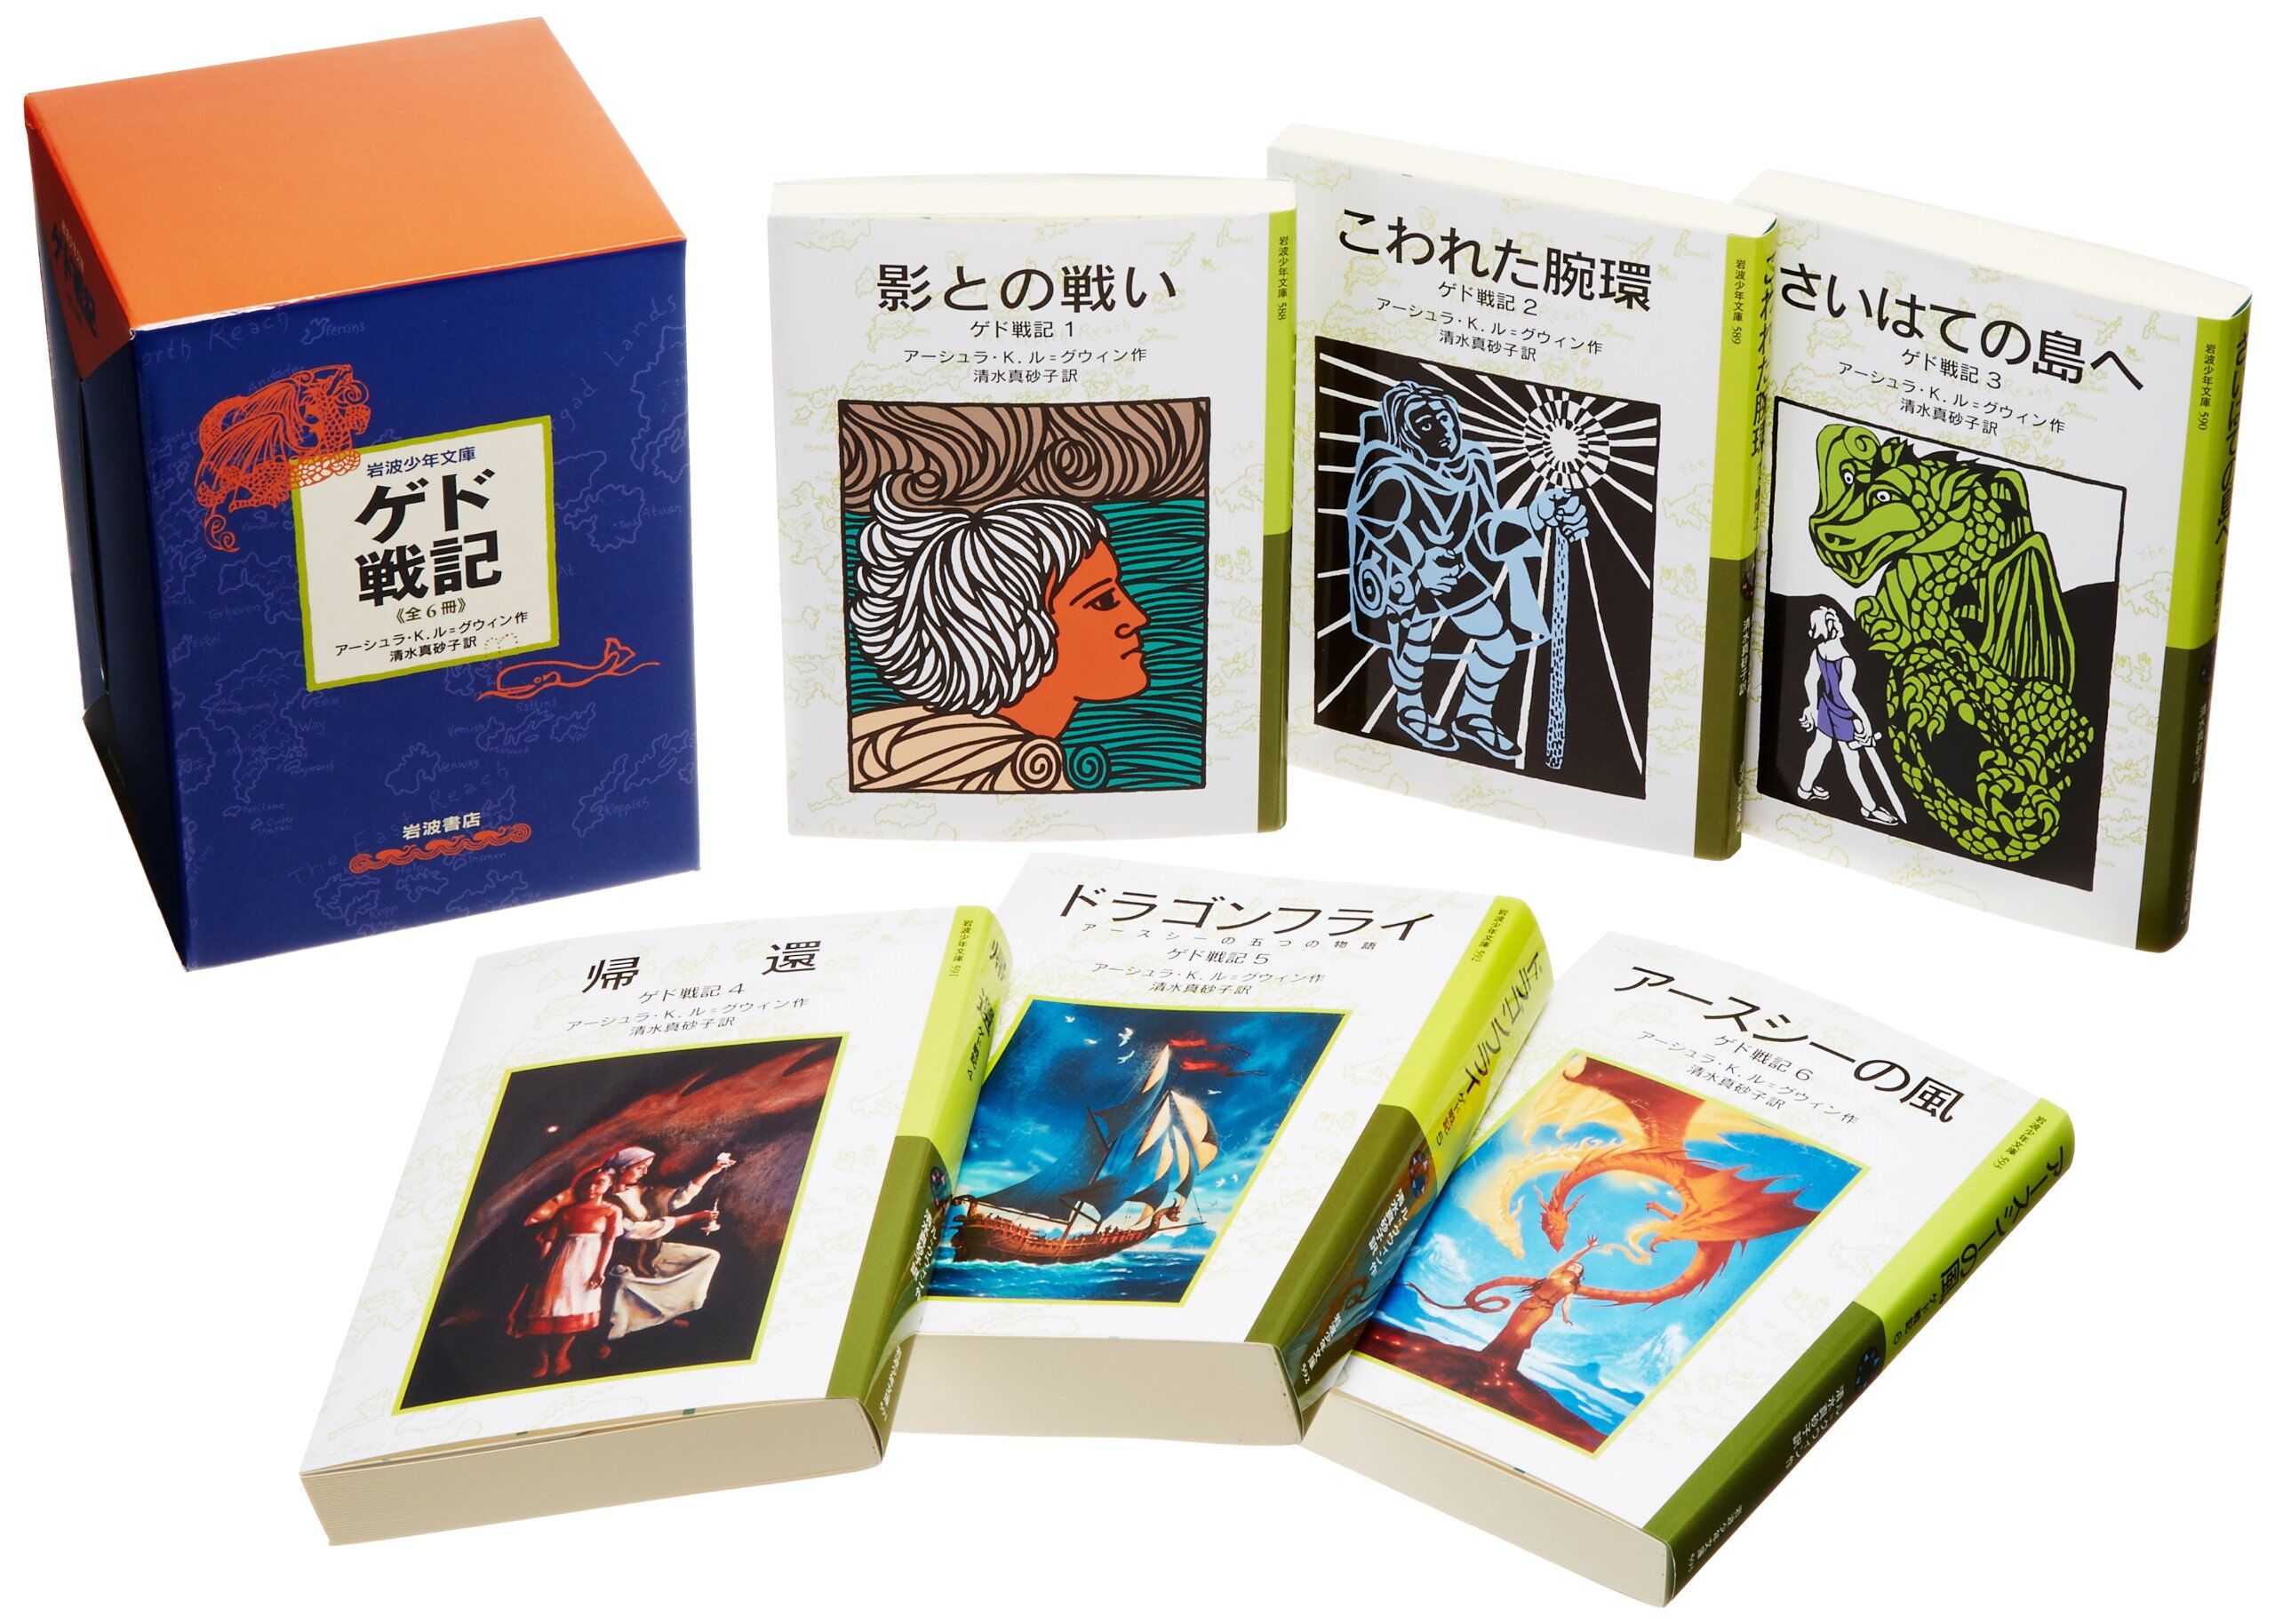 Tales from Earthsea | Ghibli Wiki | Fandom